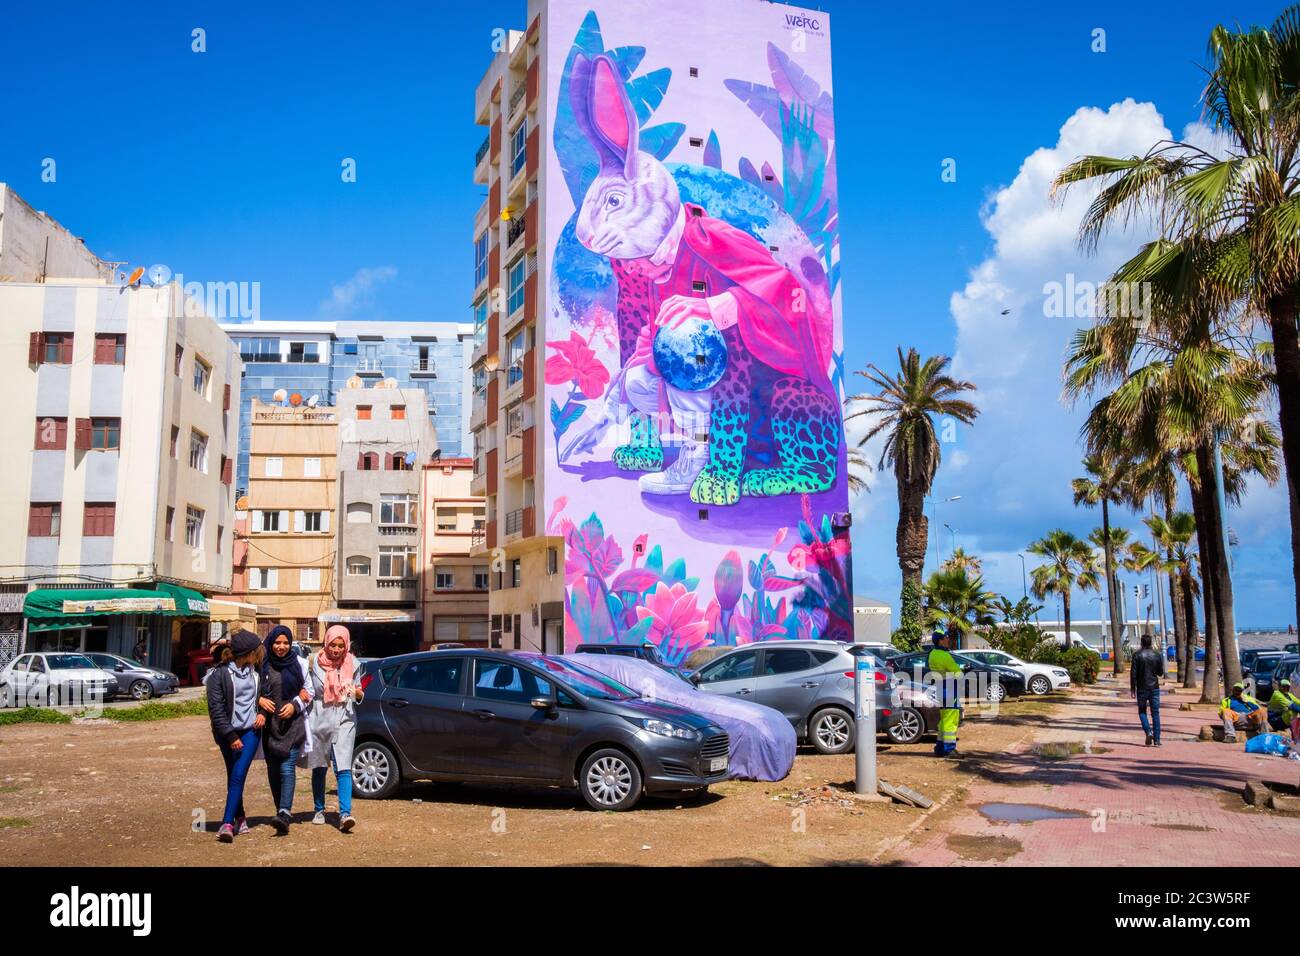 Marocco, Casablanca: Edifici e murale in Zerktouni Boulevard. Tre ragazze che camminano attraverso edifici e murali raffiguranti un coniglio gigante, opera di Mexica Foto Stock